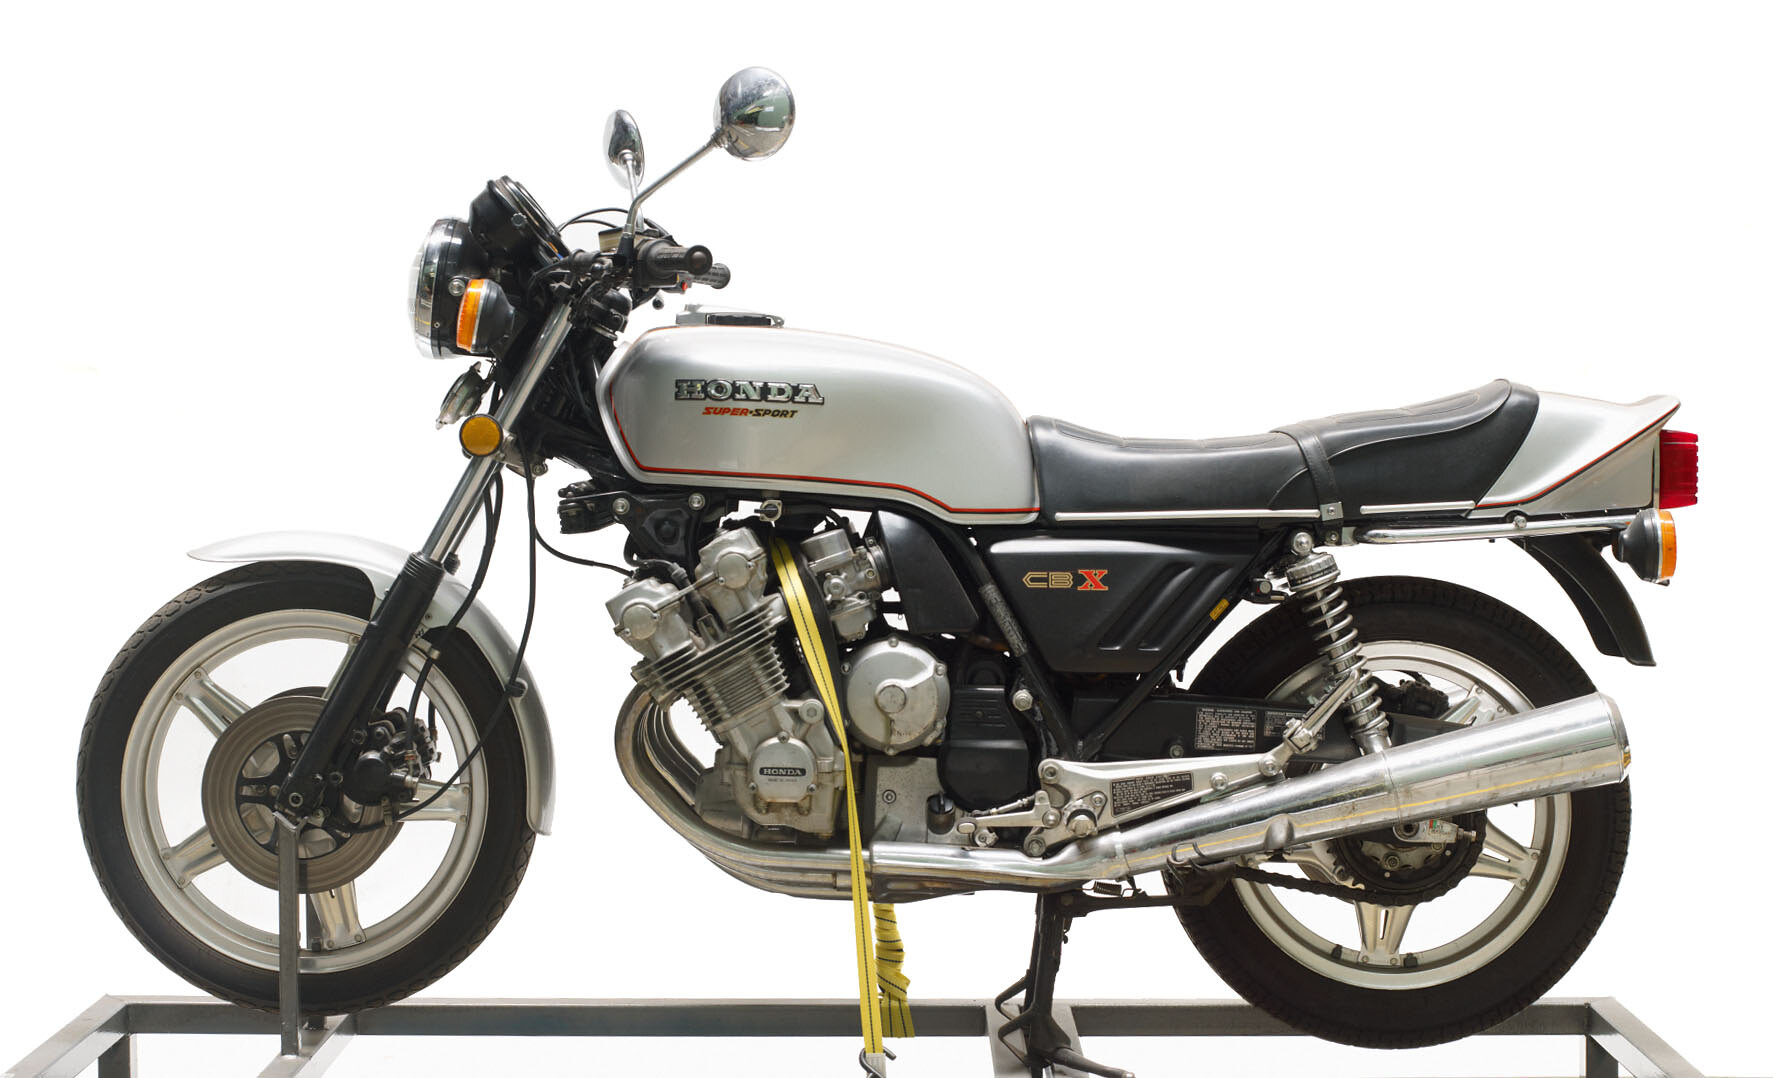 Original Super Bike: 1979 Honda CBX 1000